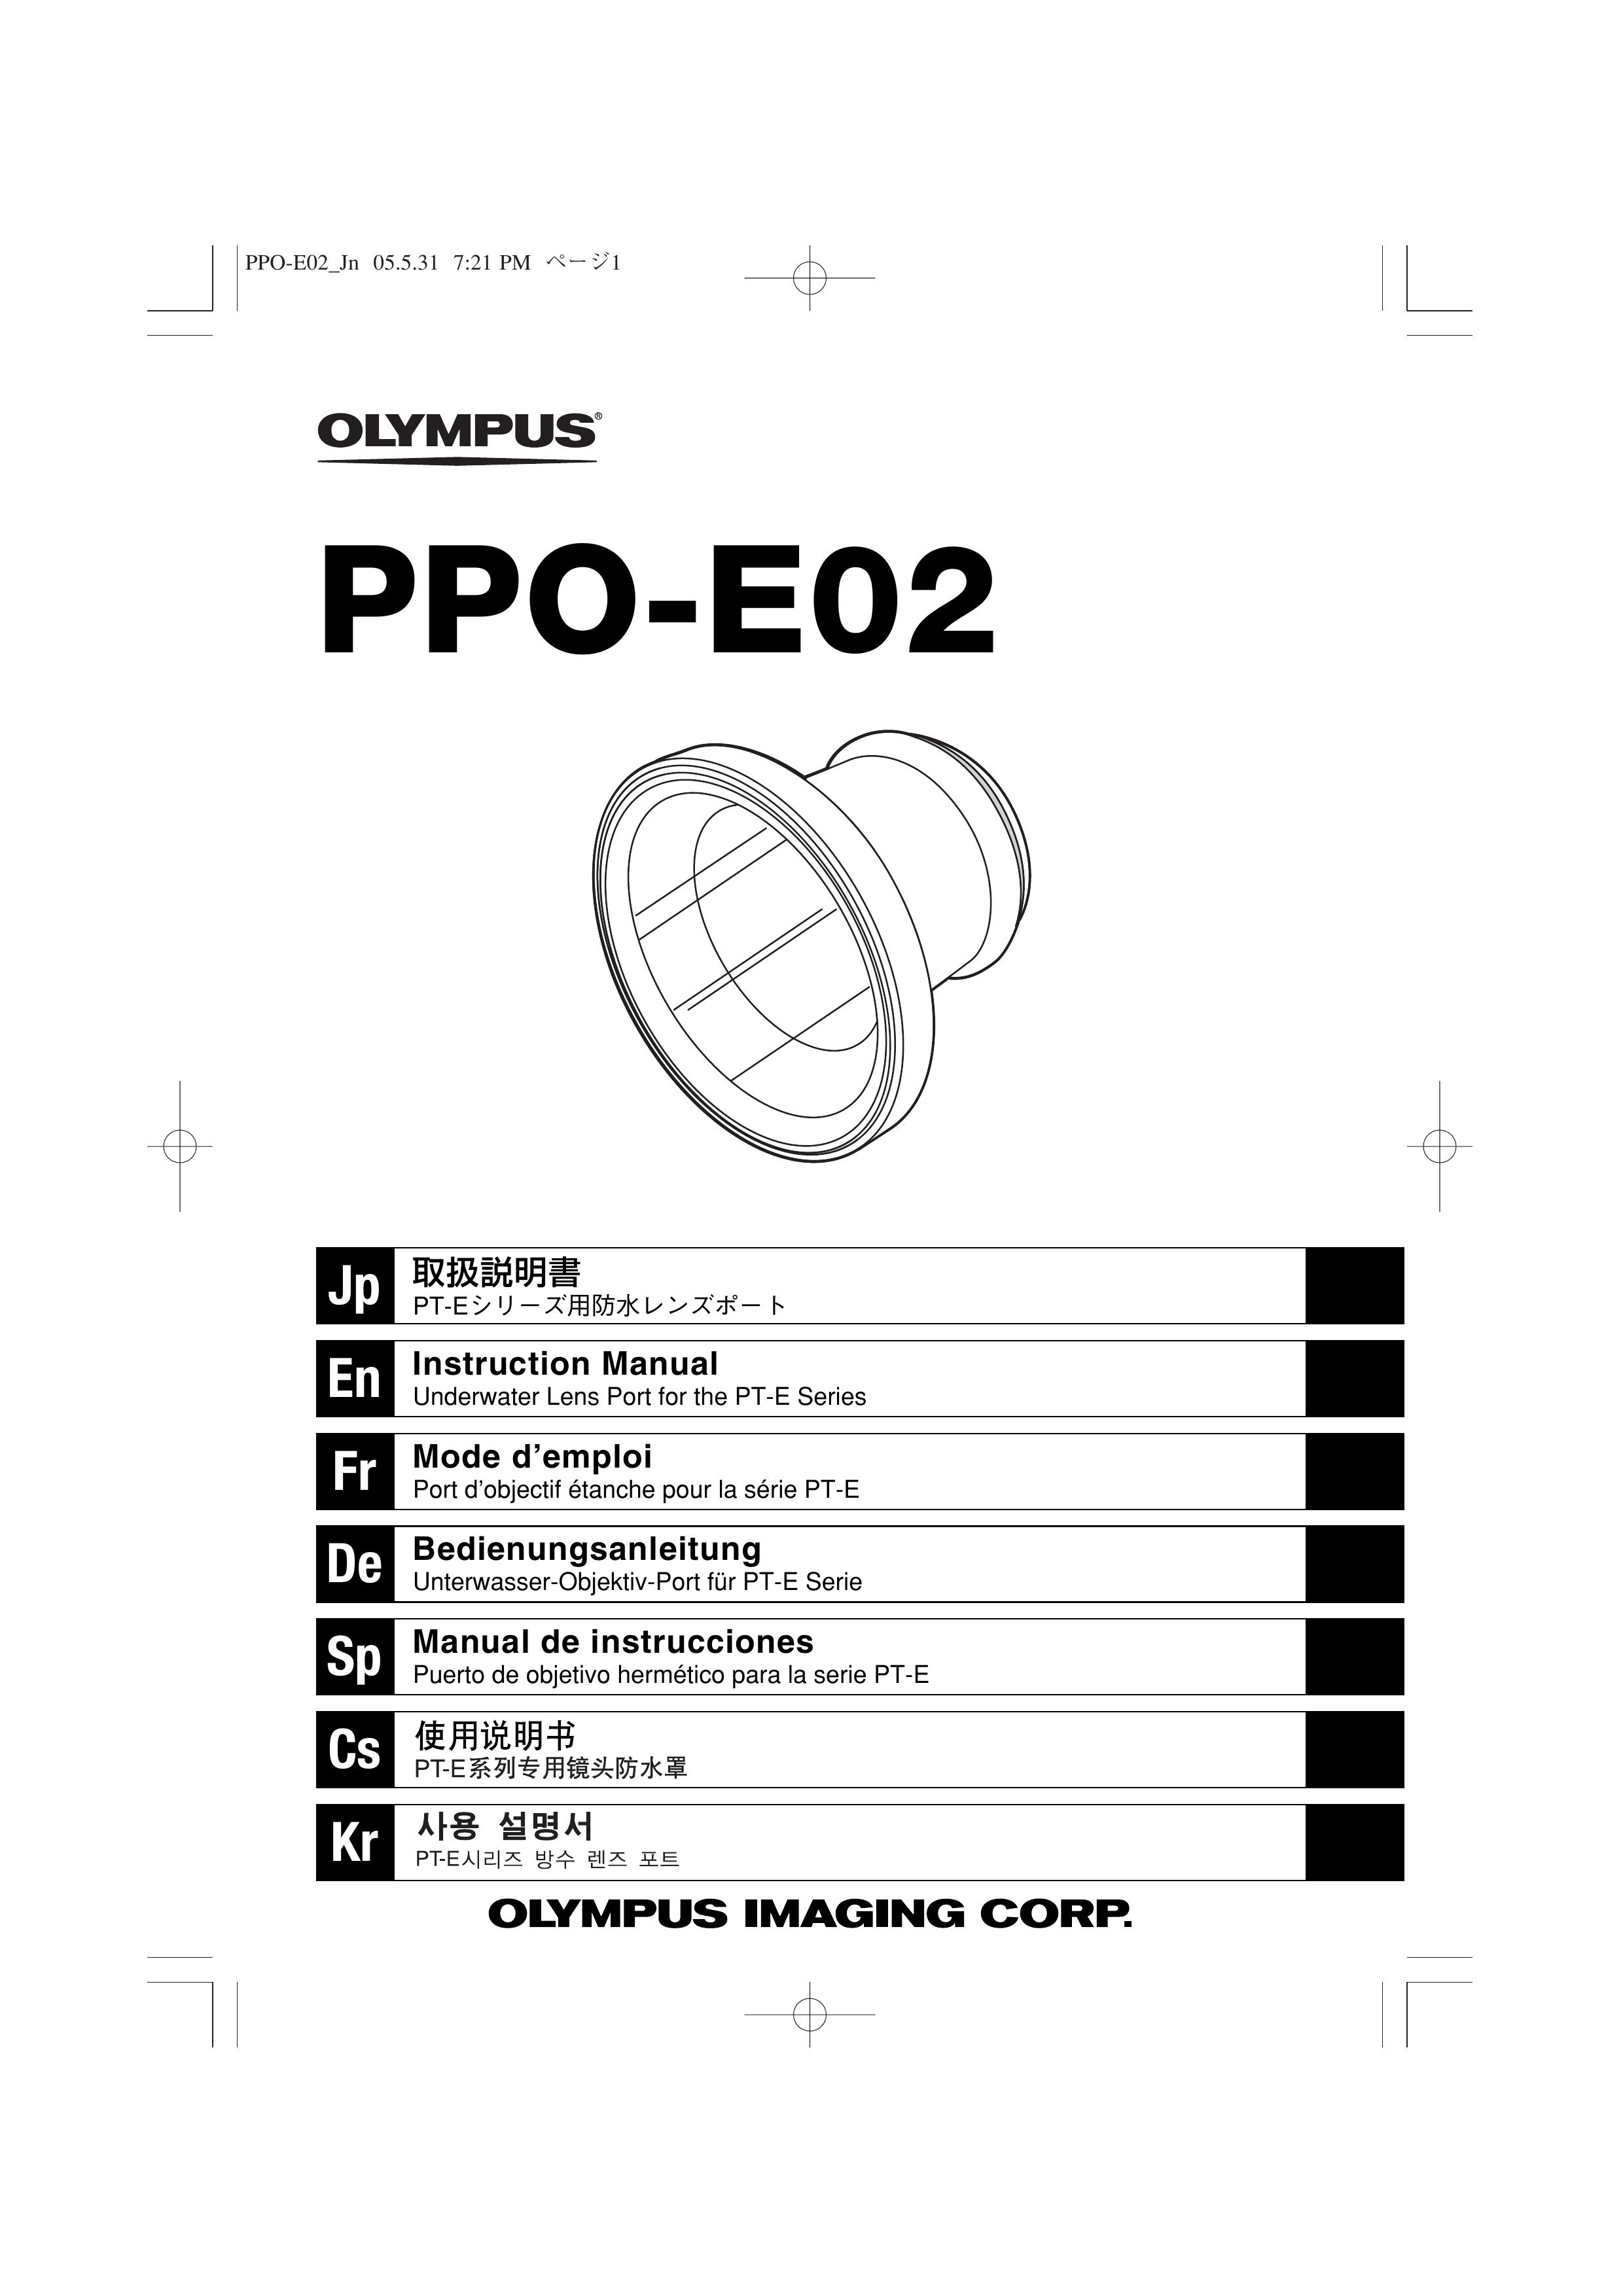 Olympus PPO-E02 Camera Accessories User Manual